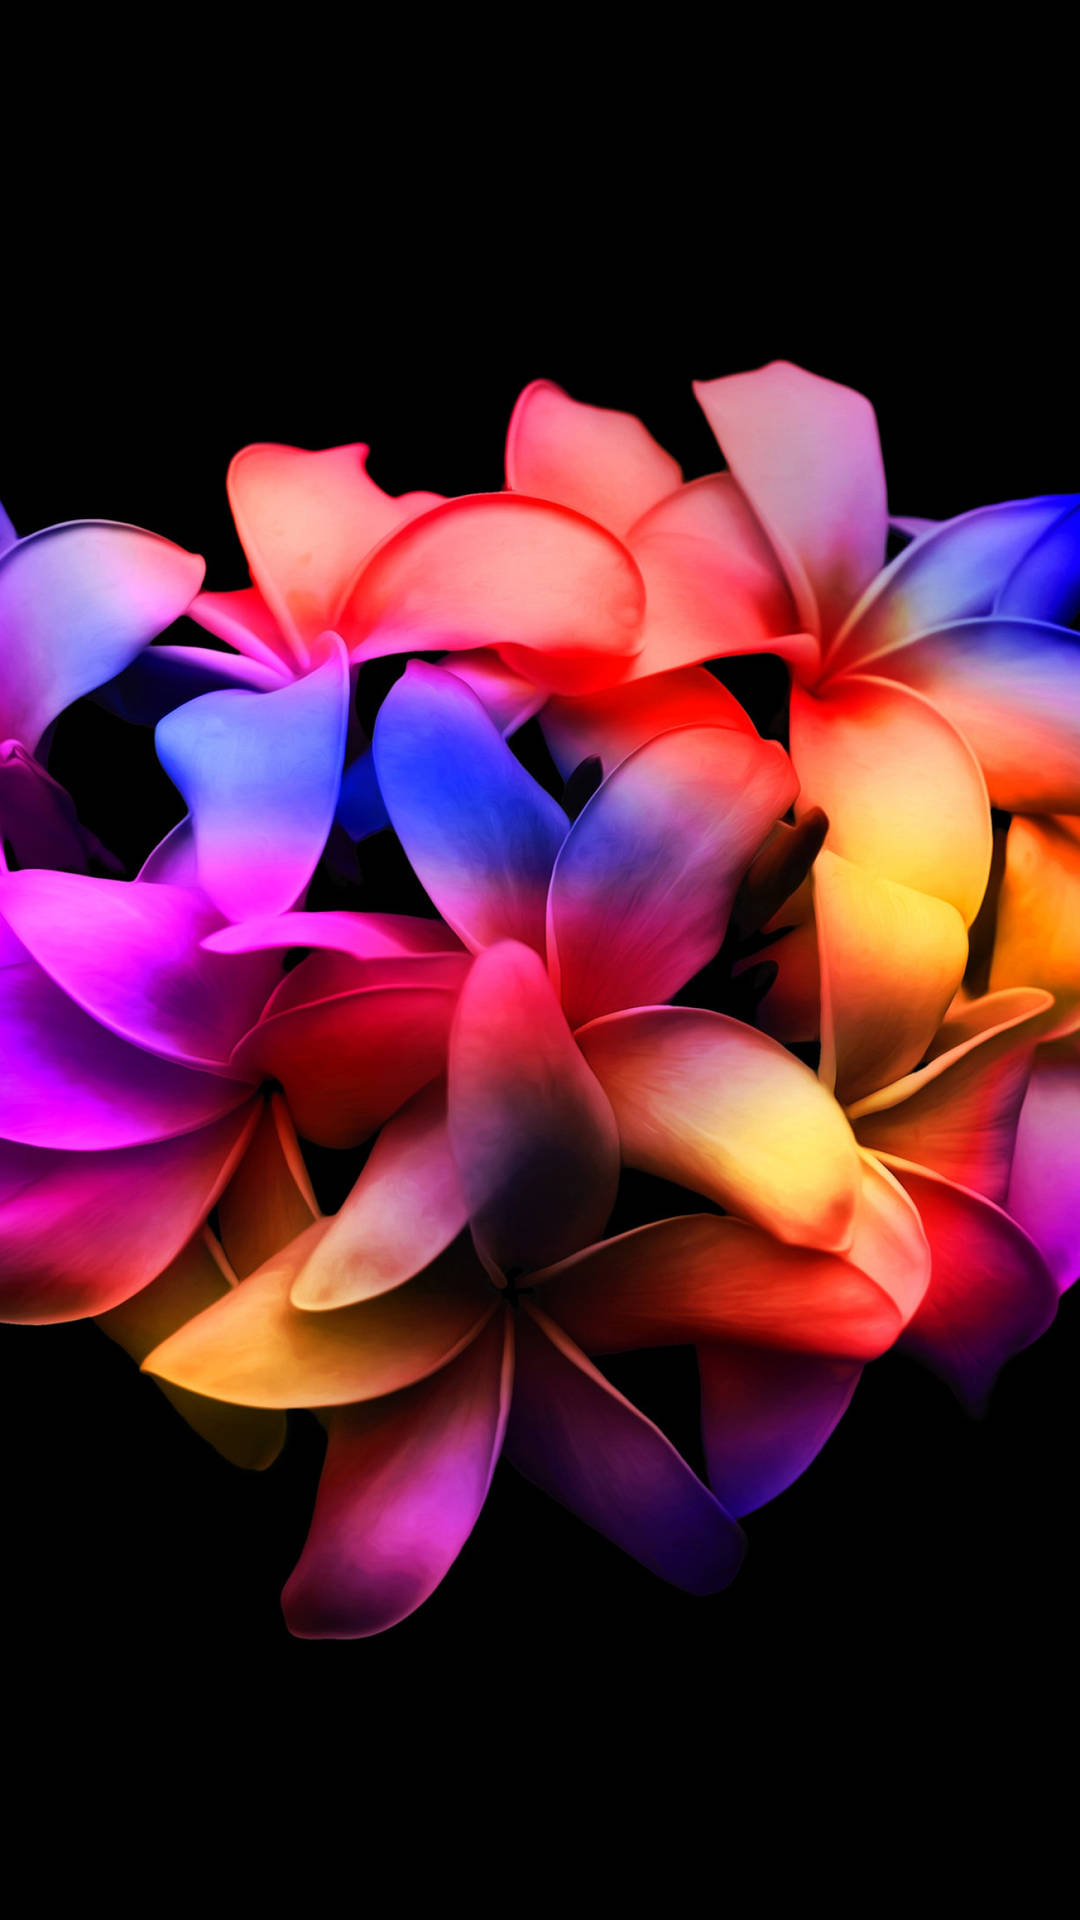 Pétalosde Flores De Plumeria Amoled Coloridos. Fondo de pantalla